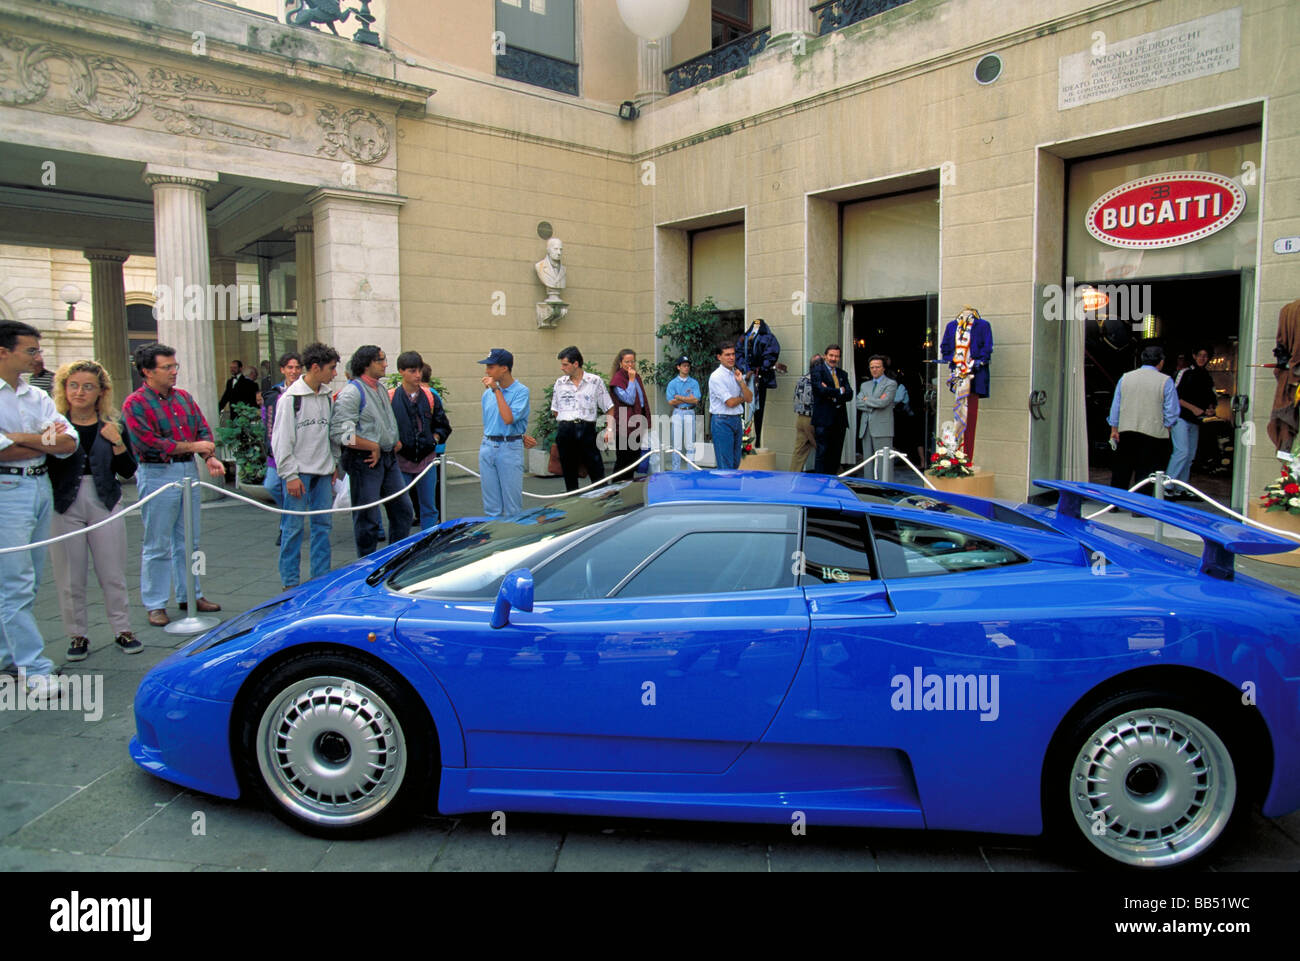 Elk140 2649 Italie Padoue Piazza dei Signori car show avec voiture Bugatti Banque D'Images